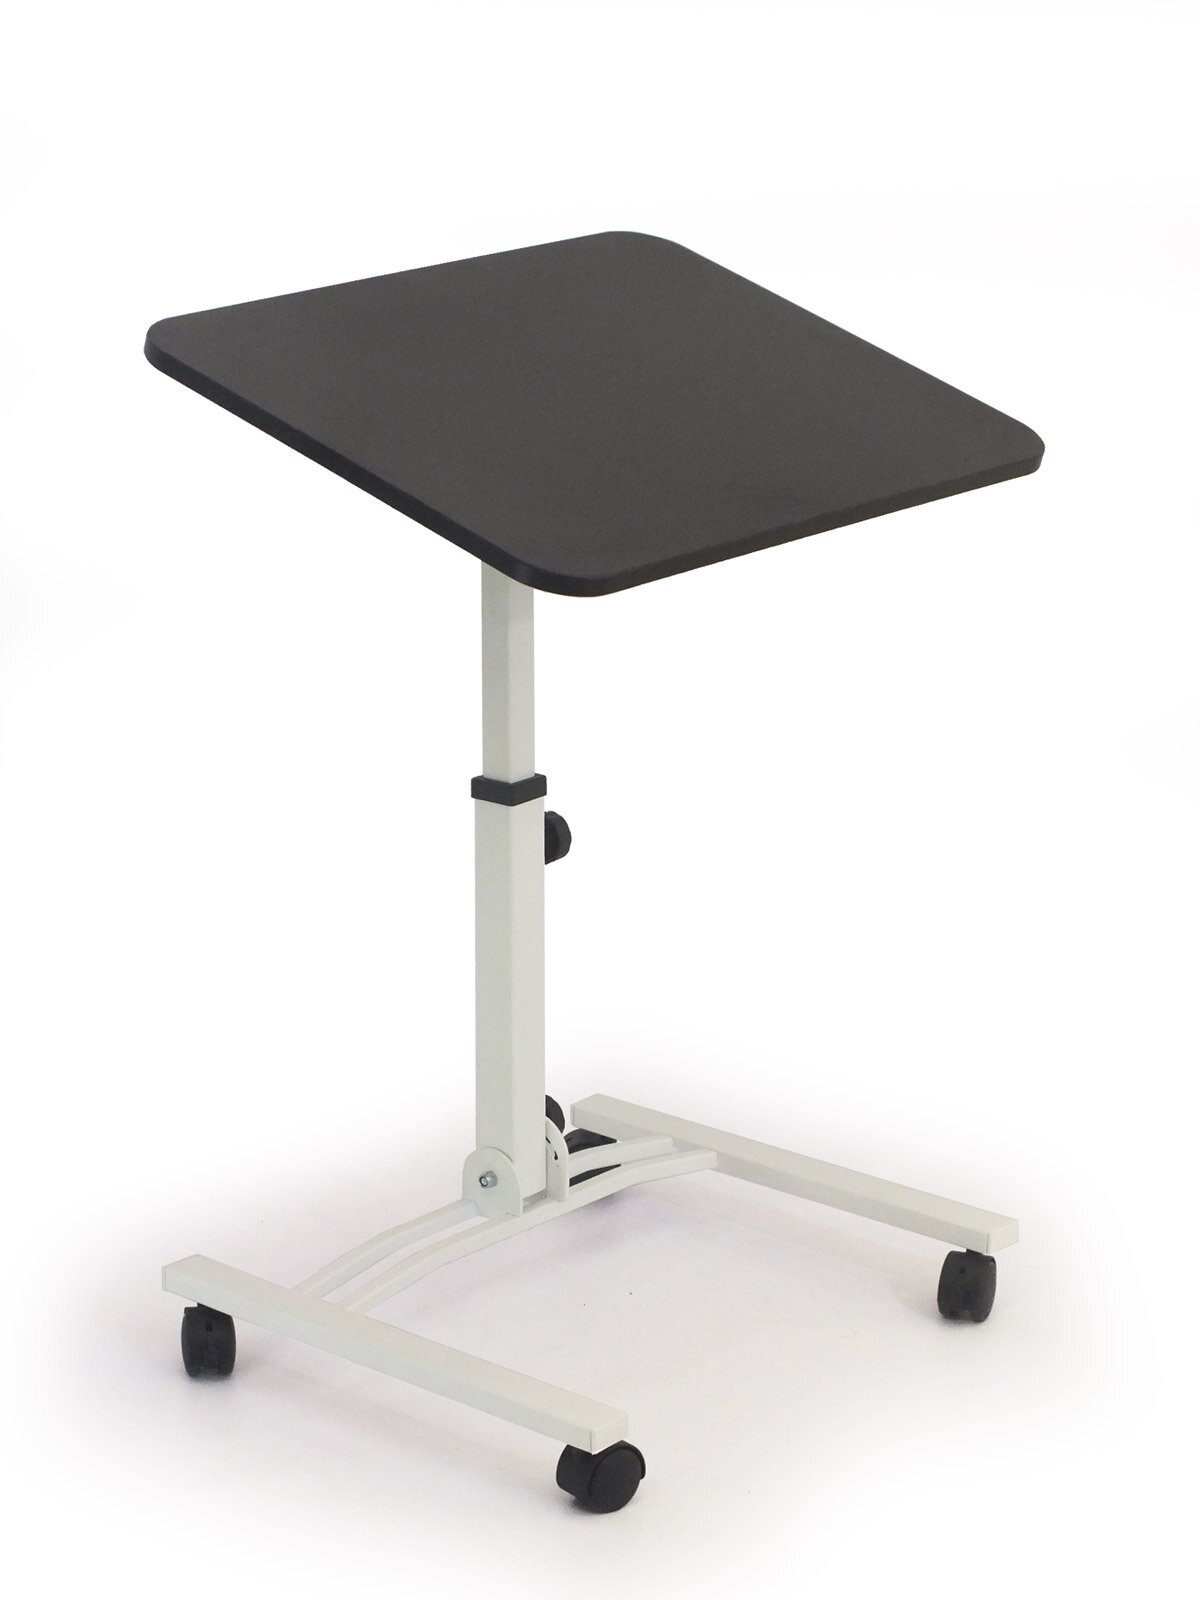 Складной стол для ноутбука на колесах «Твист-2» с регулировкой высоты и угла наклона